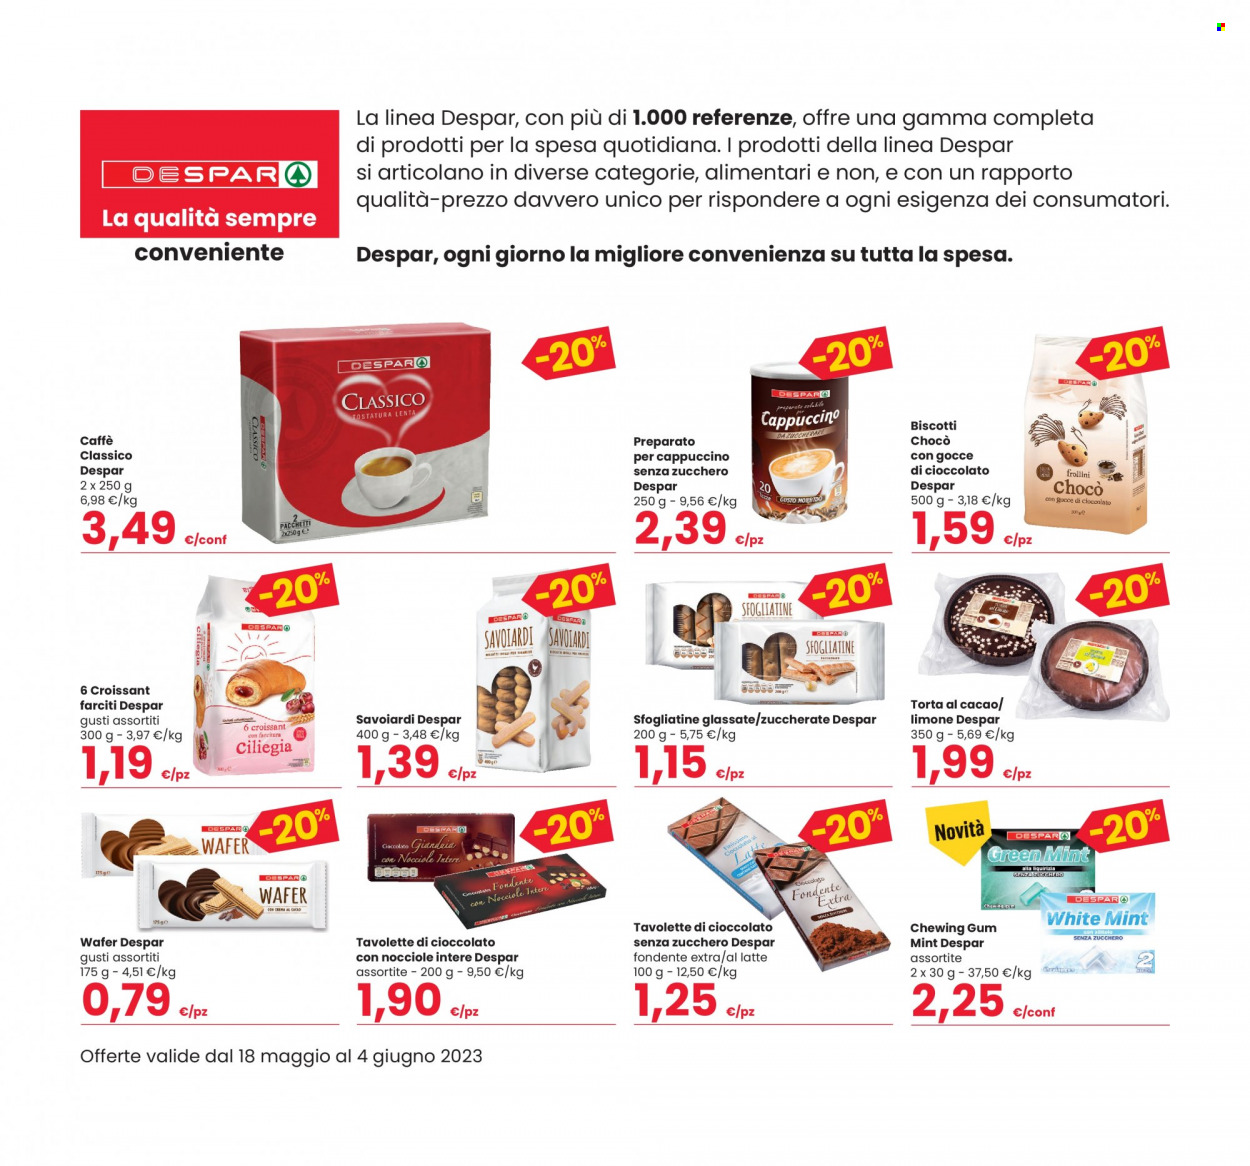 thumbnail - Volantino Eurospar - 18/5/2023 - 4/6/2023 - Prodotti in offerta - croissant, savoiardi, torta, biscotti, wafer, chewing gum, tavoletta di cioccolato, caffè. Pagina 10.